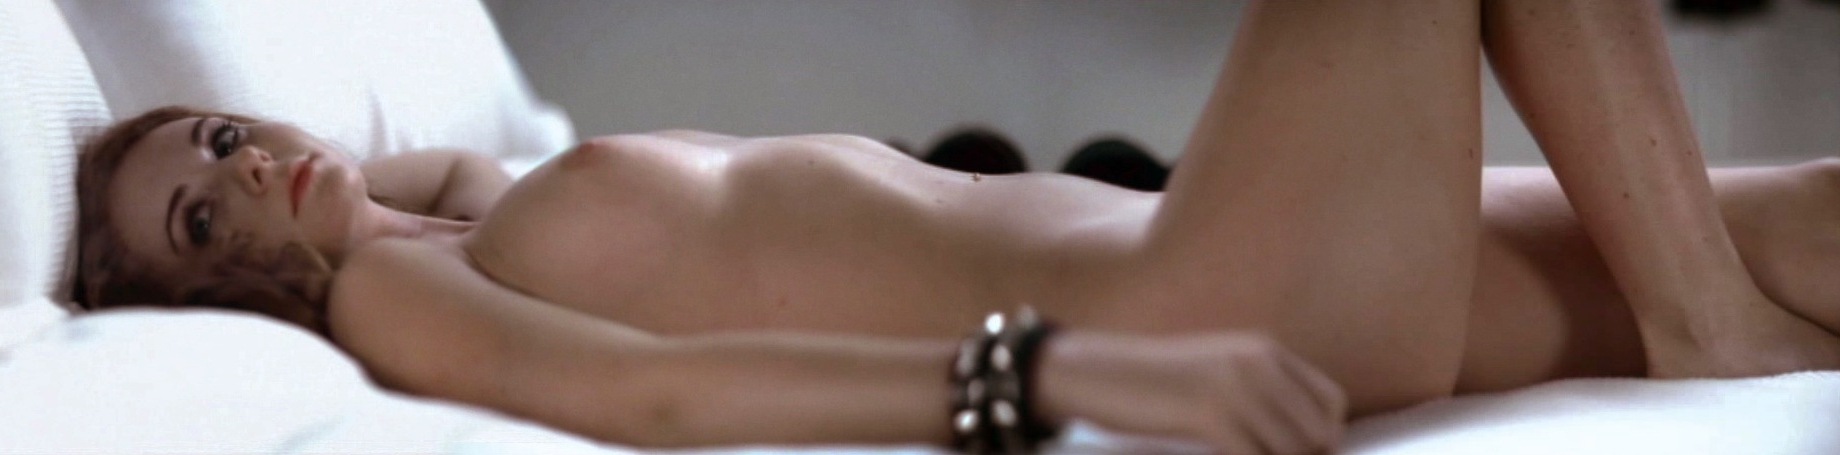 Лена Катина nude.jpg.